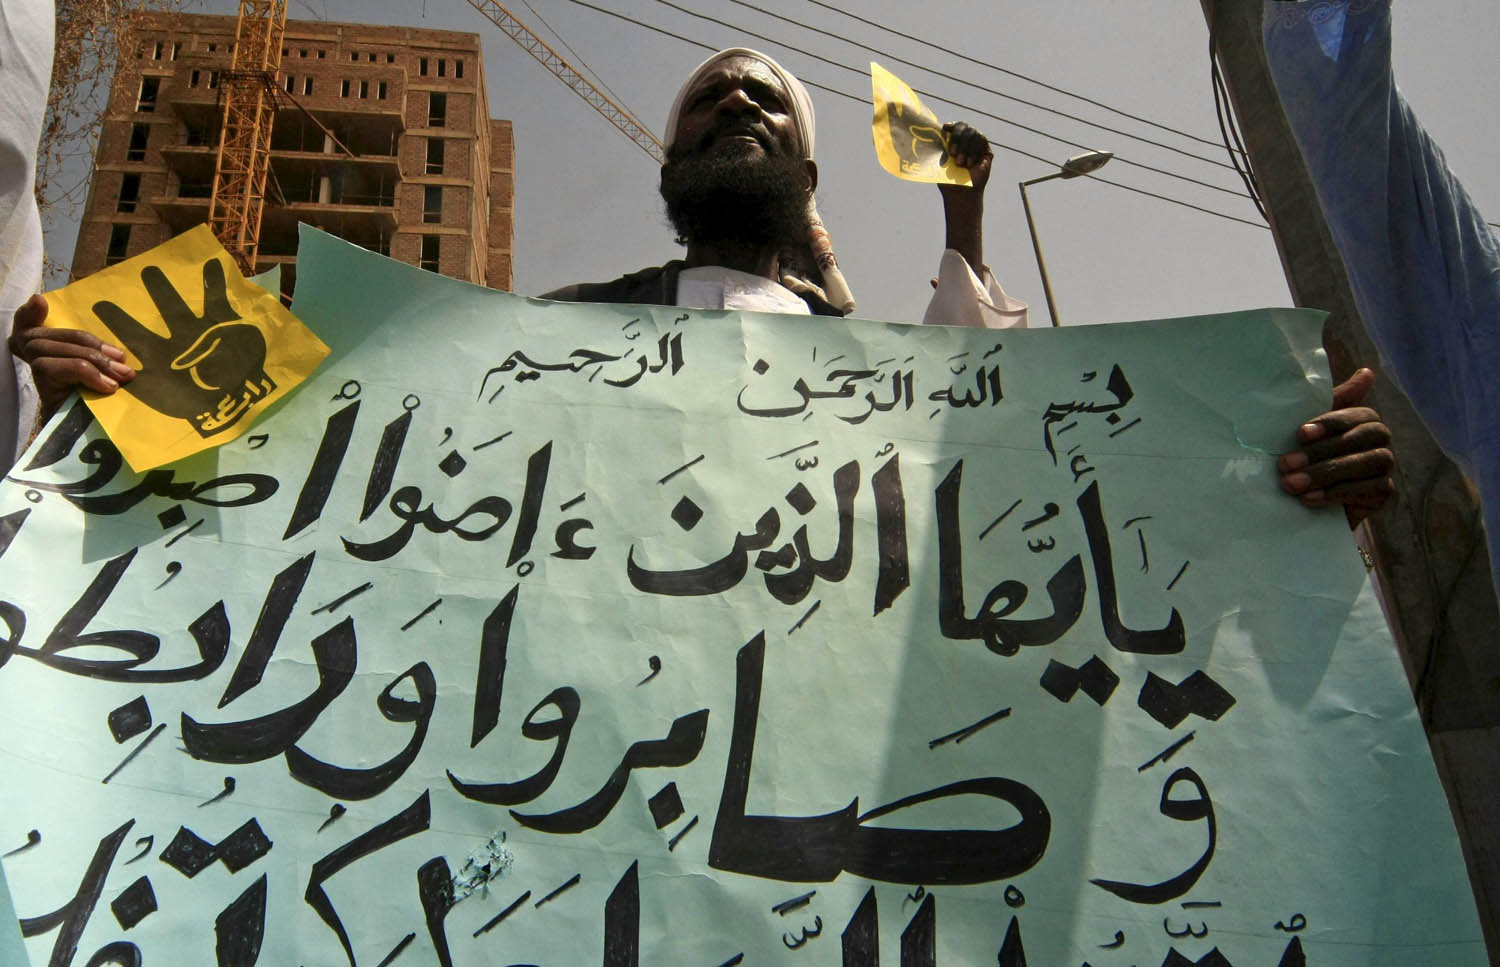 متظاهر سوداني يرفع شعارات لتنظيم الأخوان